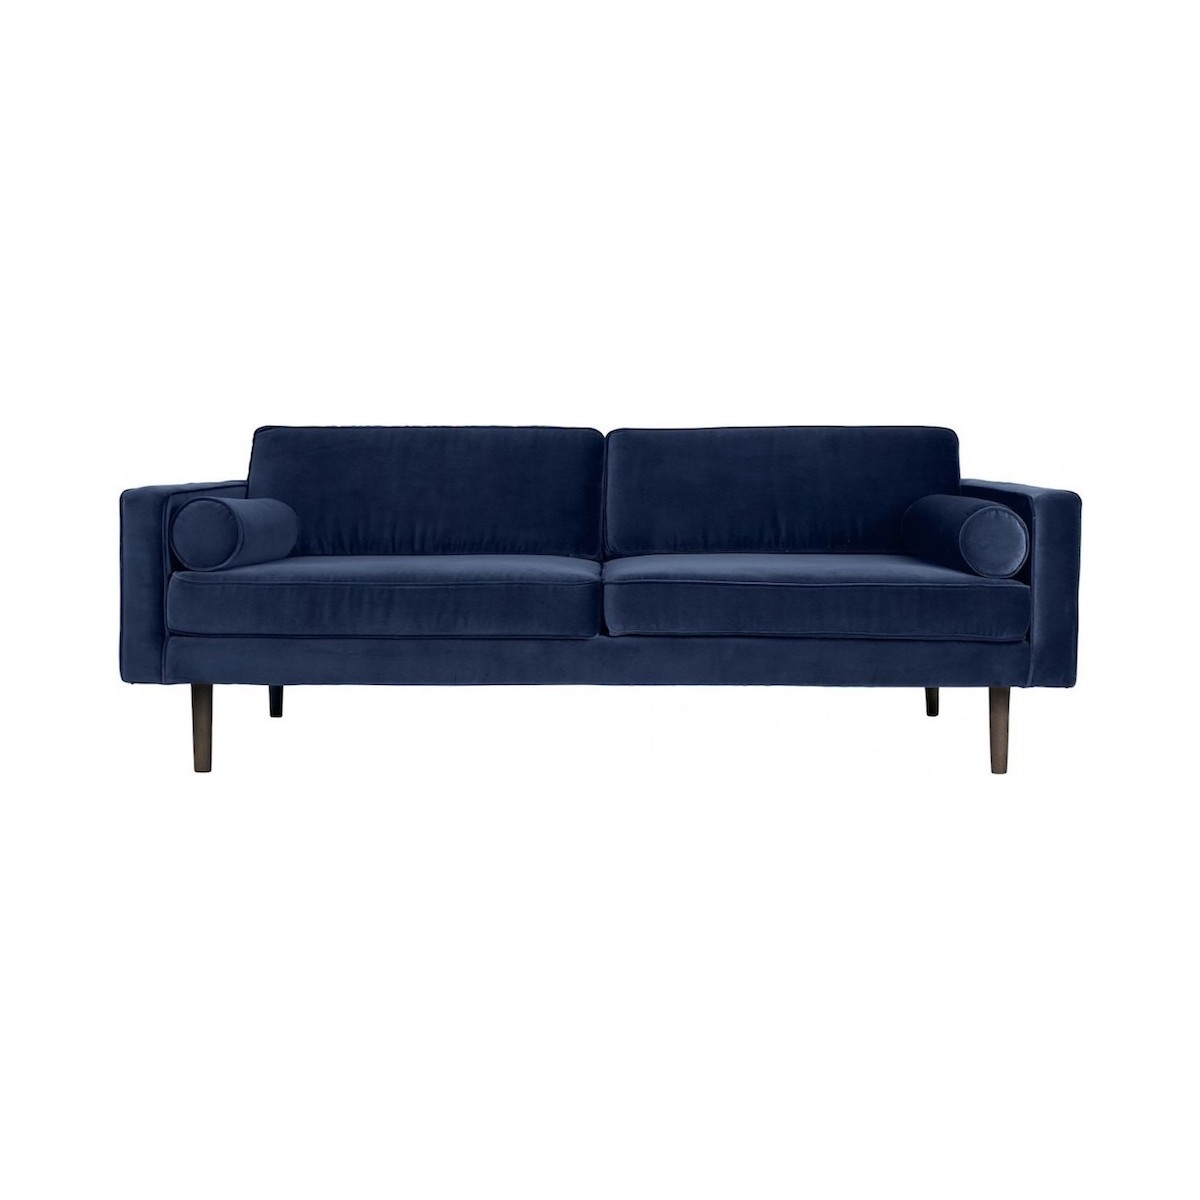 Insignia blue - Wind sofa